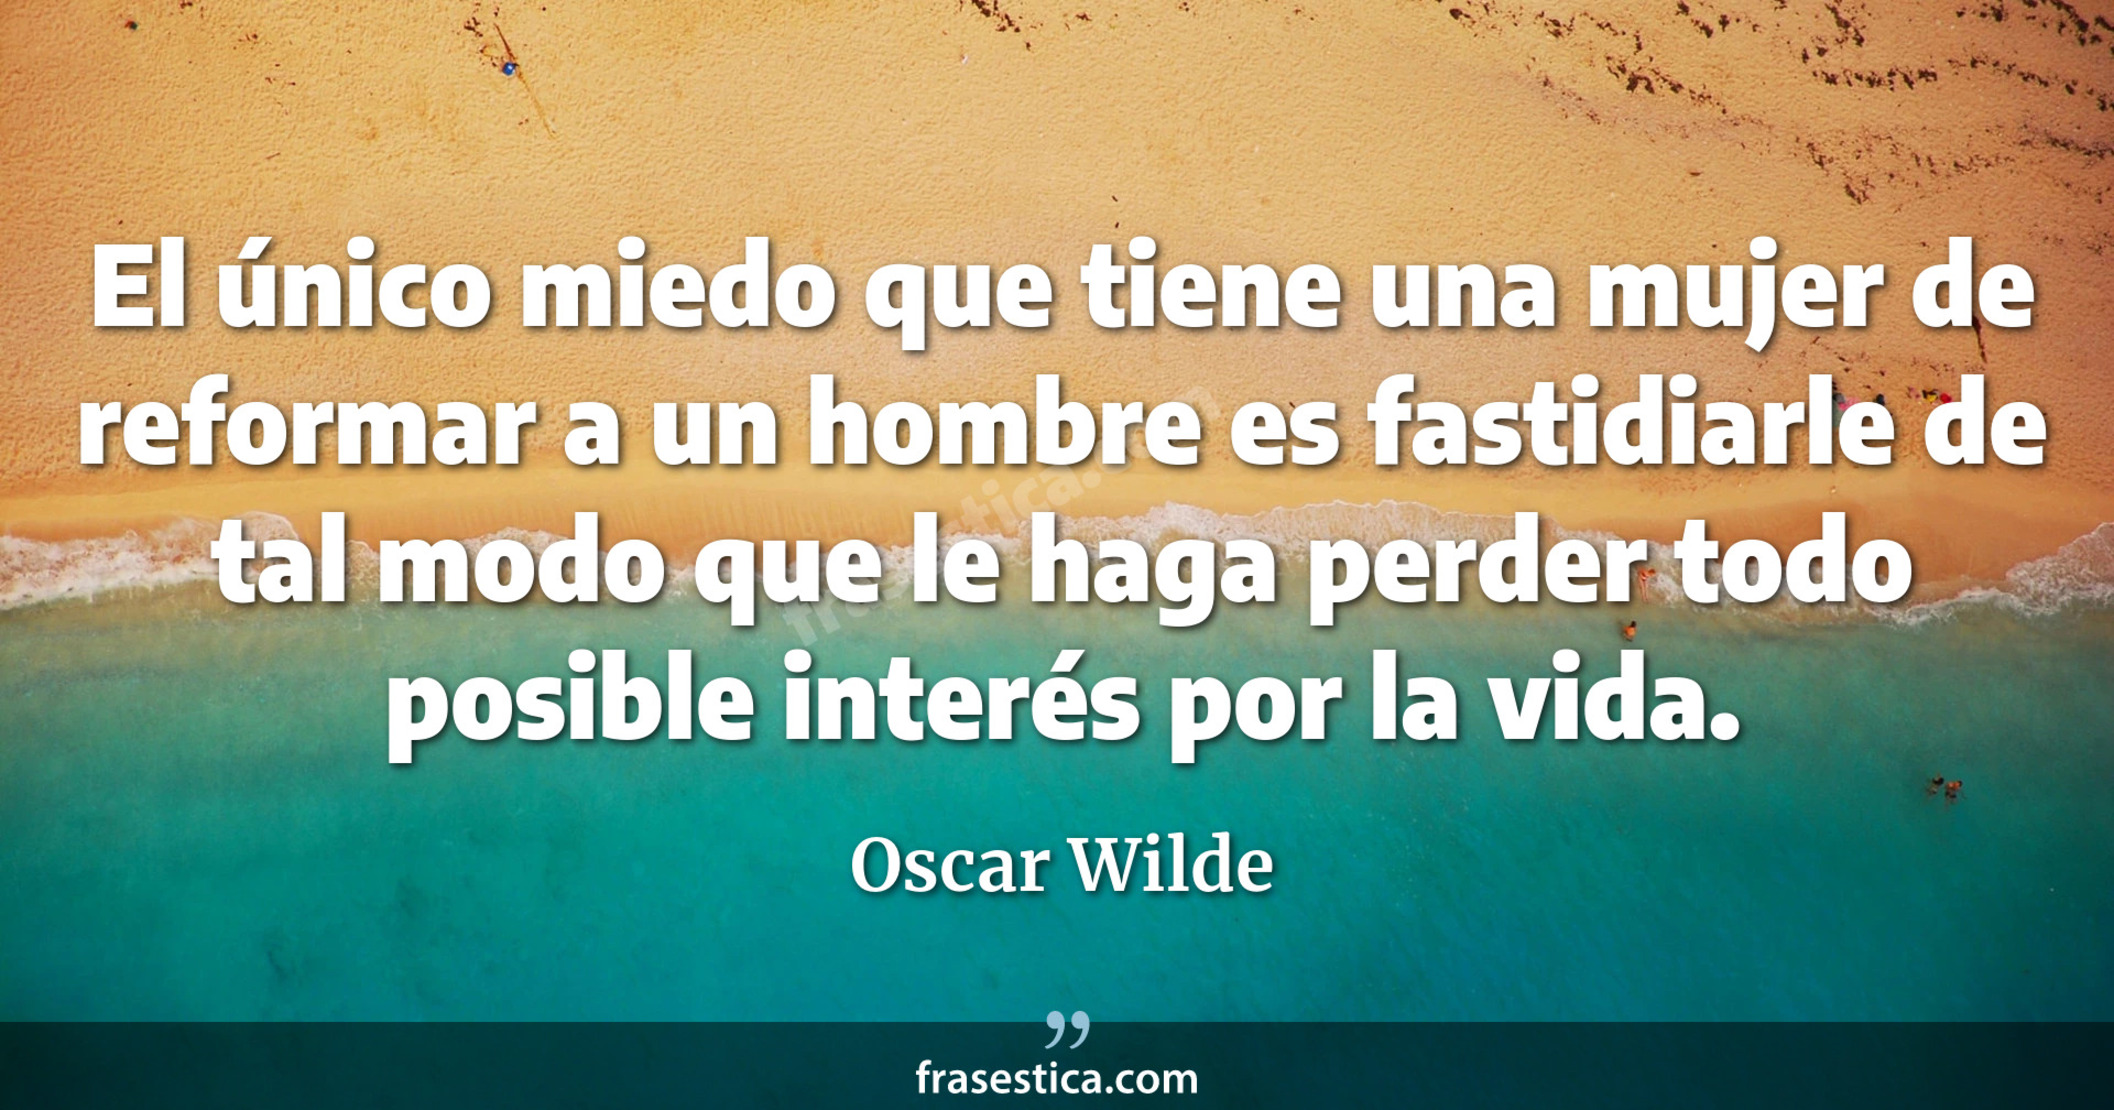 El único miedo que tiene una mujer de reformar a un hombre es fastidiarle de tal modo que le haga perder todo posible interés por la vida. - Oscar Wilde